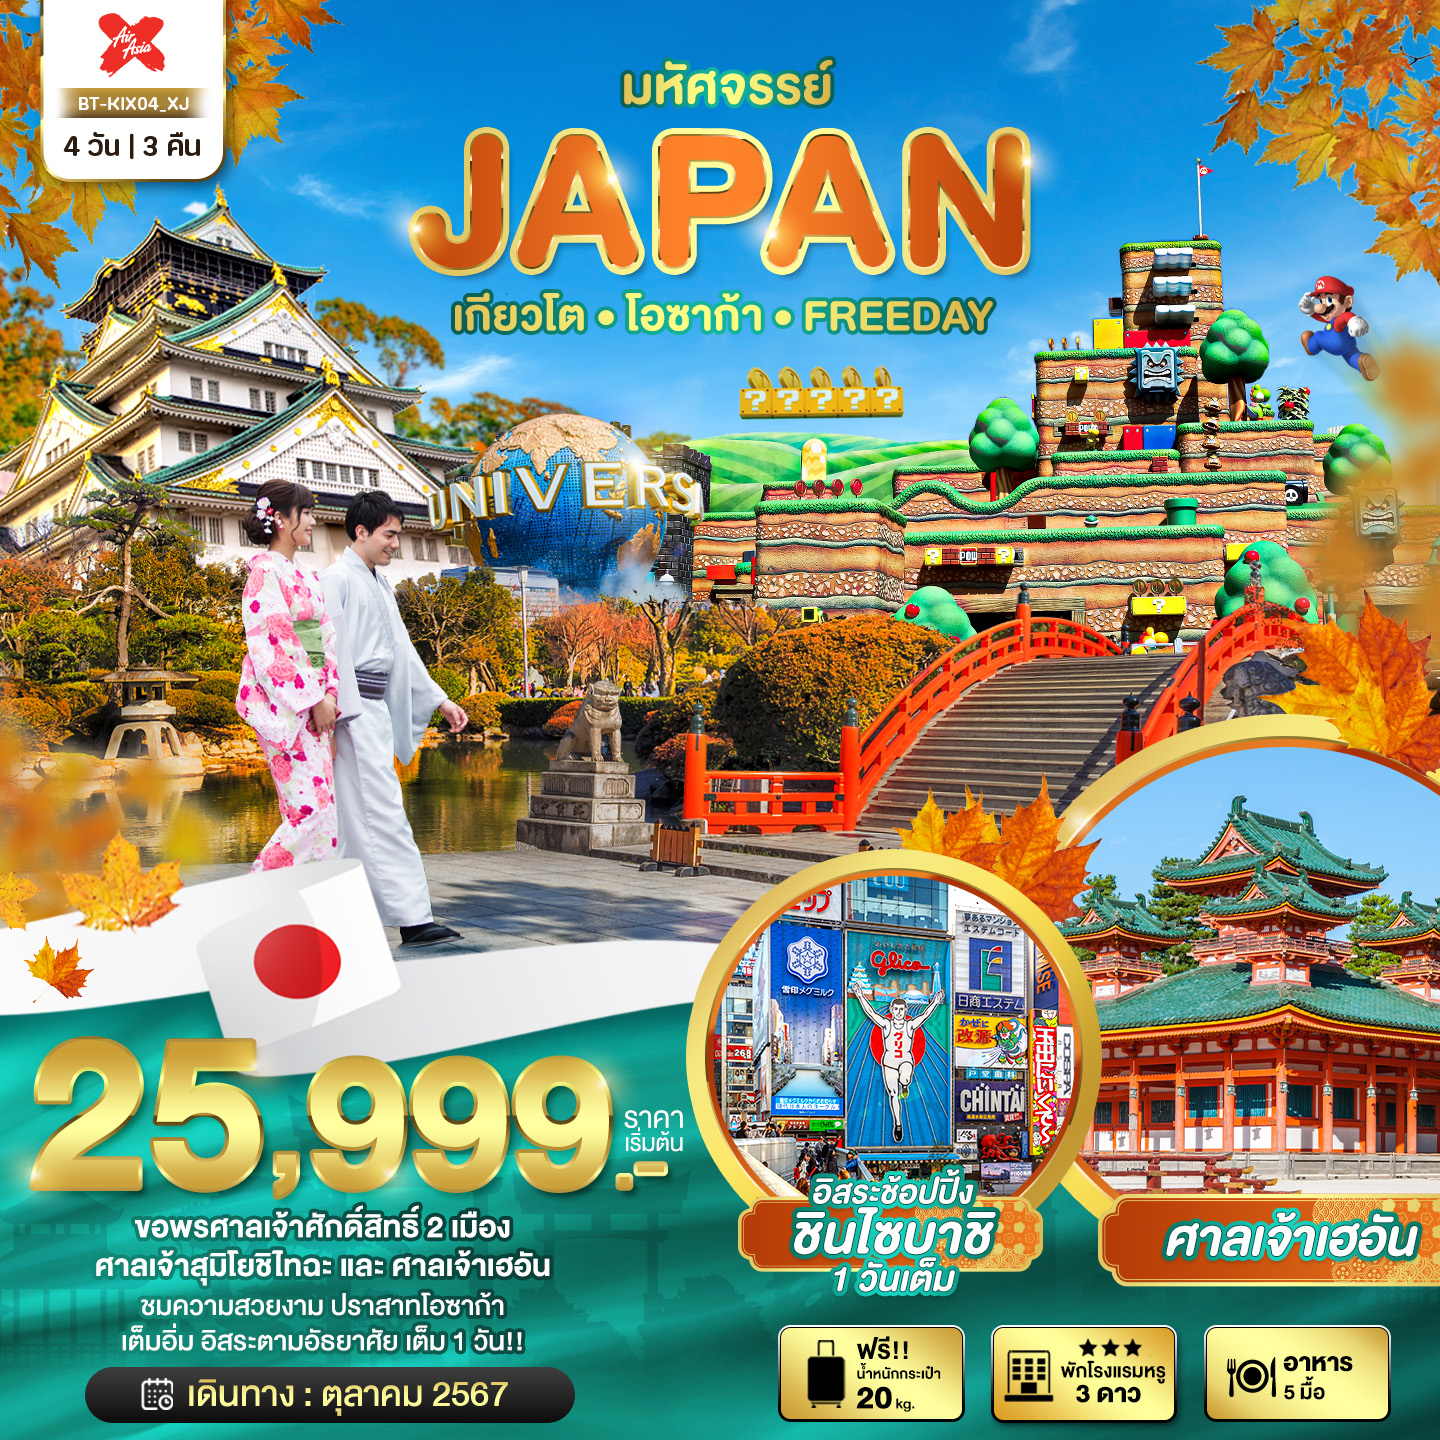 JAPAN ญี่ปุ่น เกียวโต โอซาก้า ฟรีเดย์ 4 วัน 3 คืน เดินทาง ตุลาคม 67 เริ่มต้น 25,999.- Air Asia X (XJ)